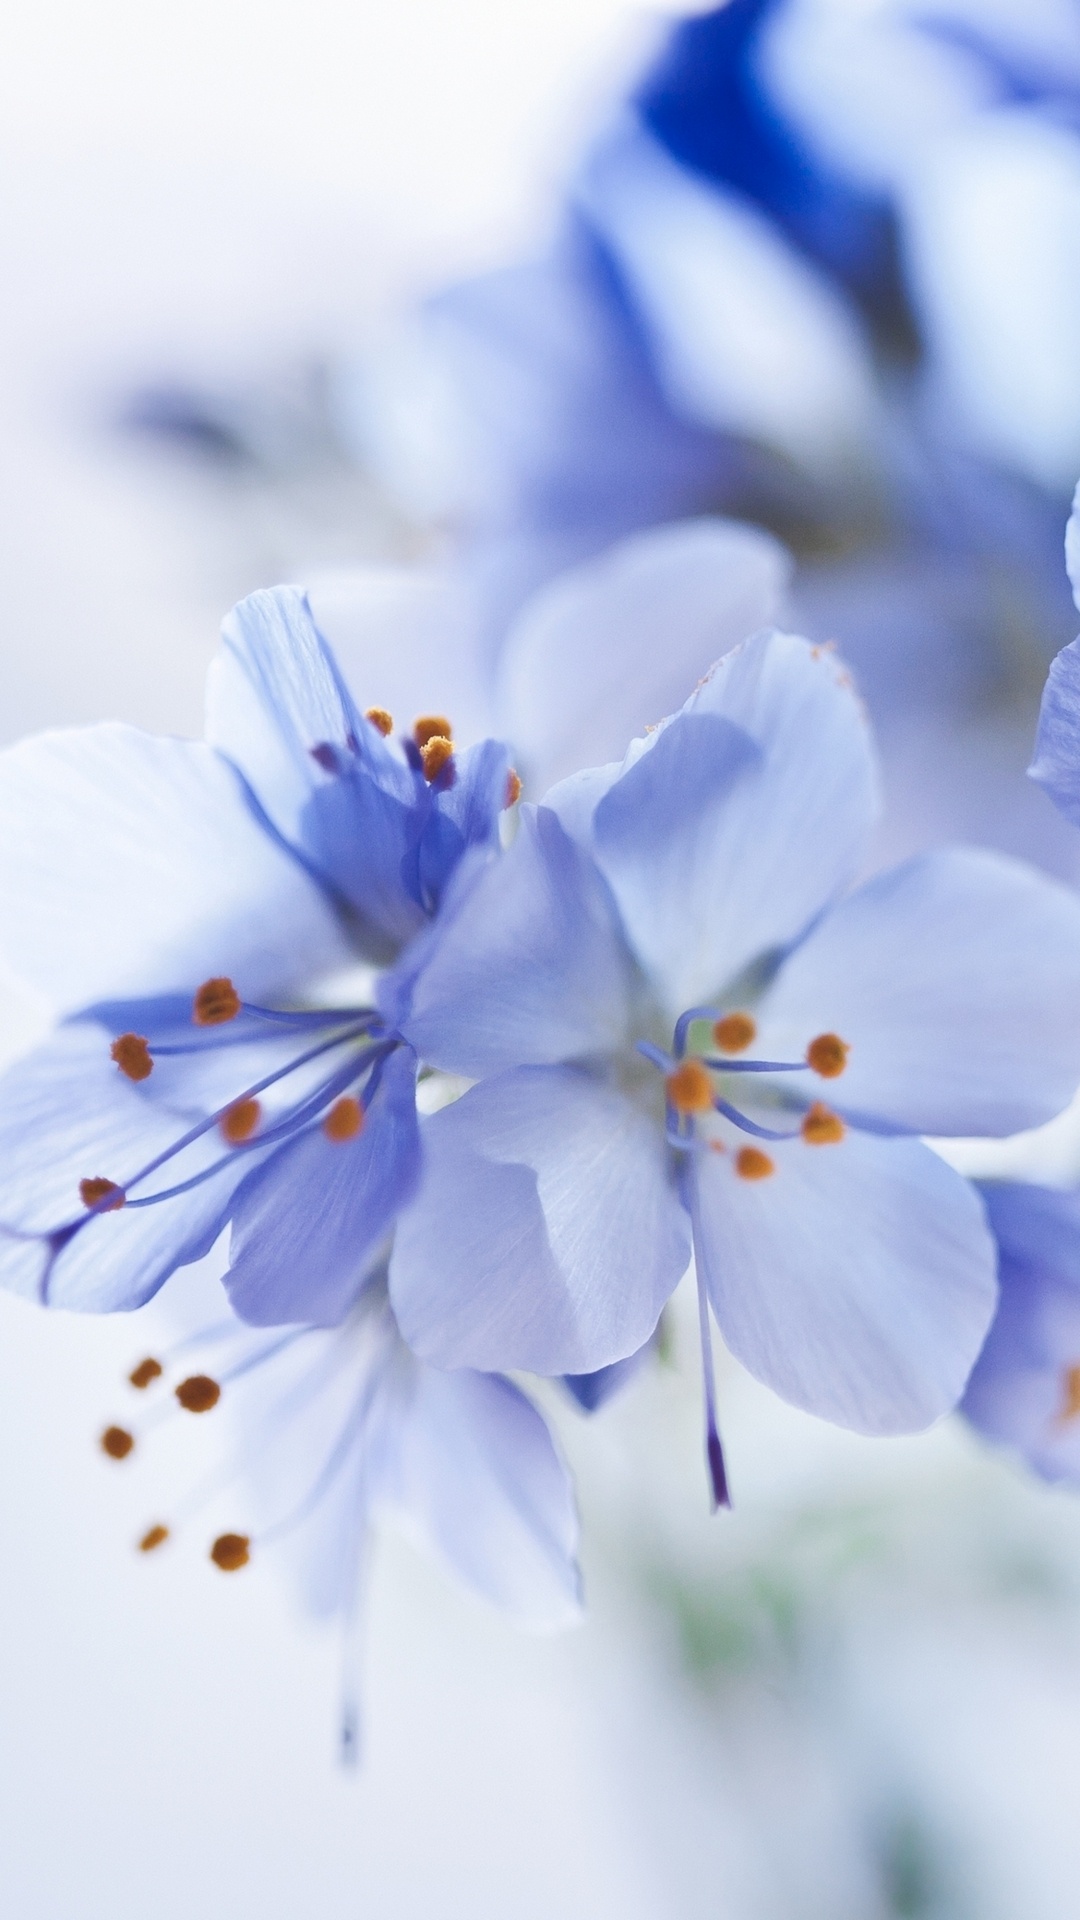 White and Blue Flowers in Tilt Shift Lens. Wallpaper in 1080x1920 Resolution